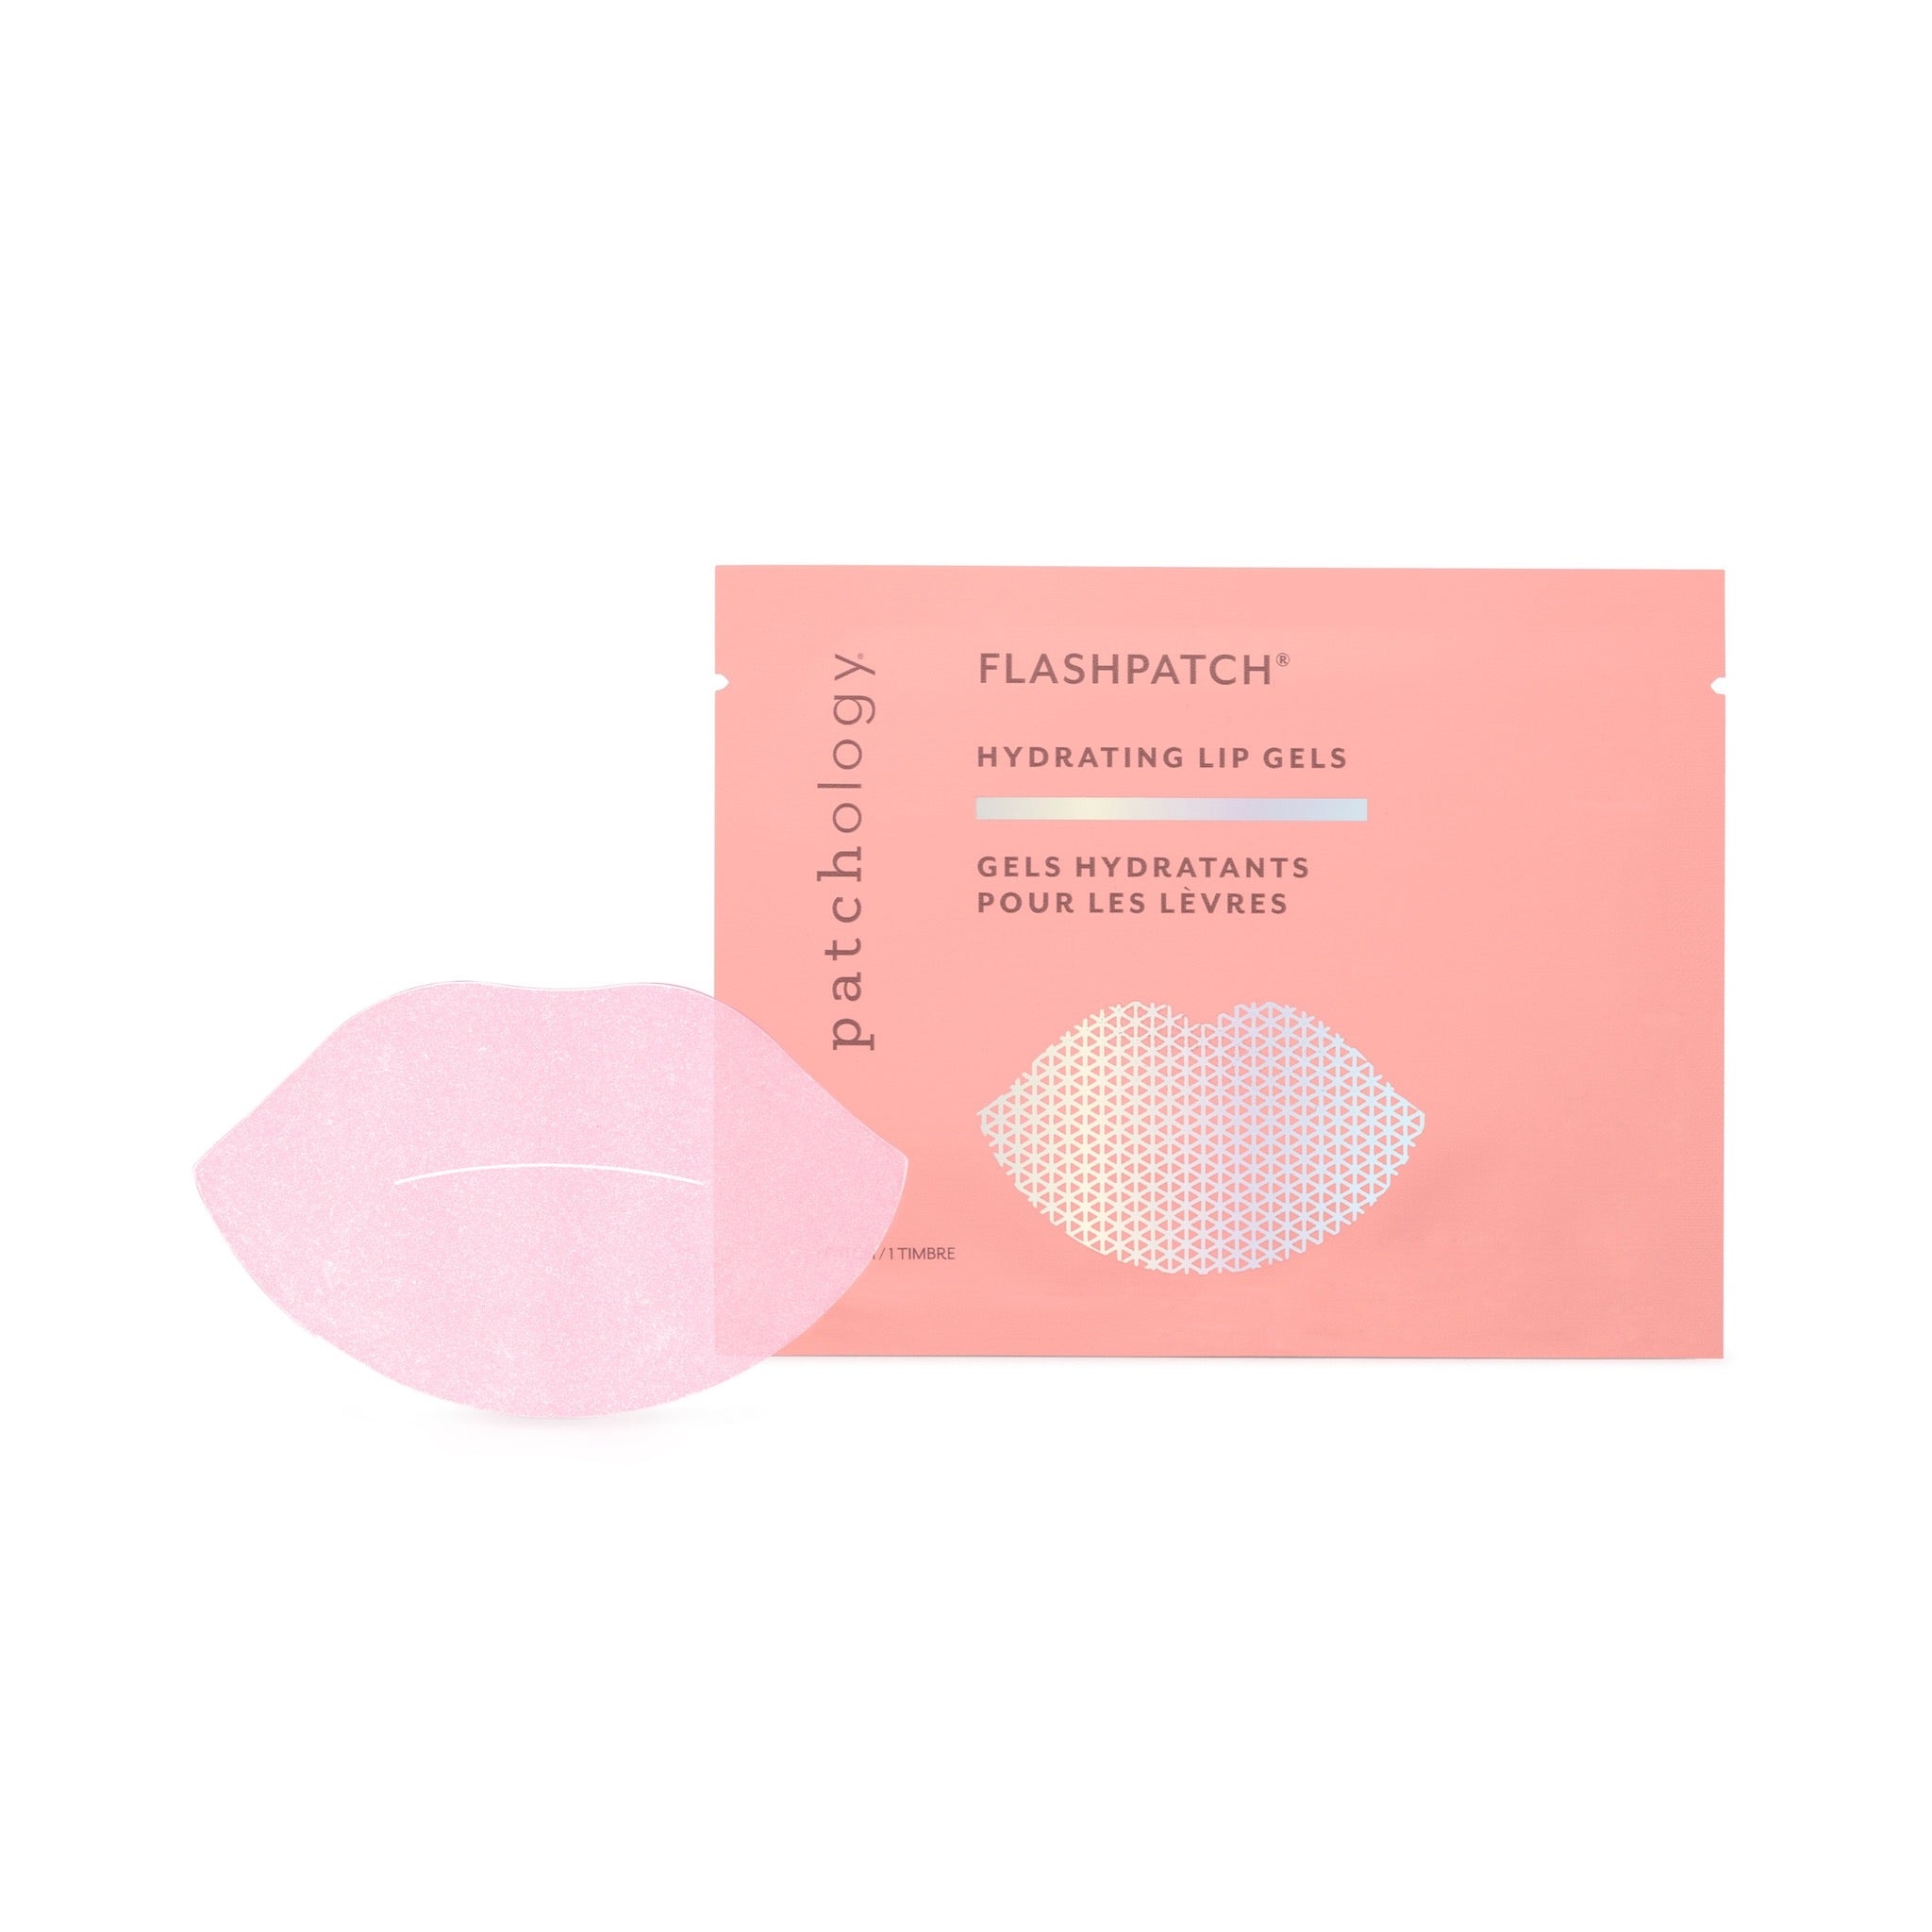 FlashPatch Hydrating Lip Gels (6620698181801)